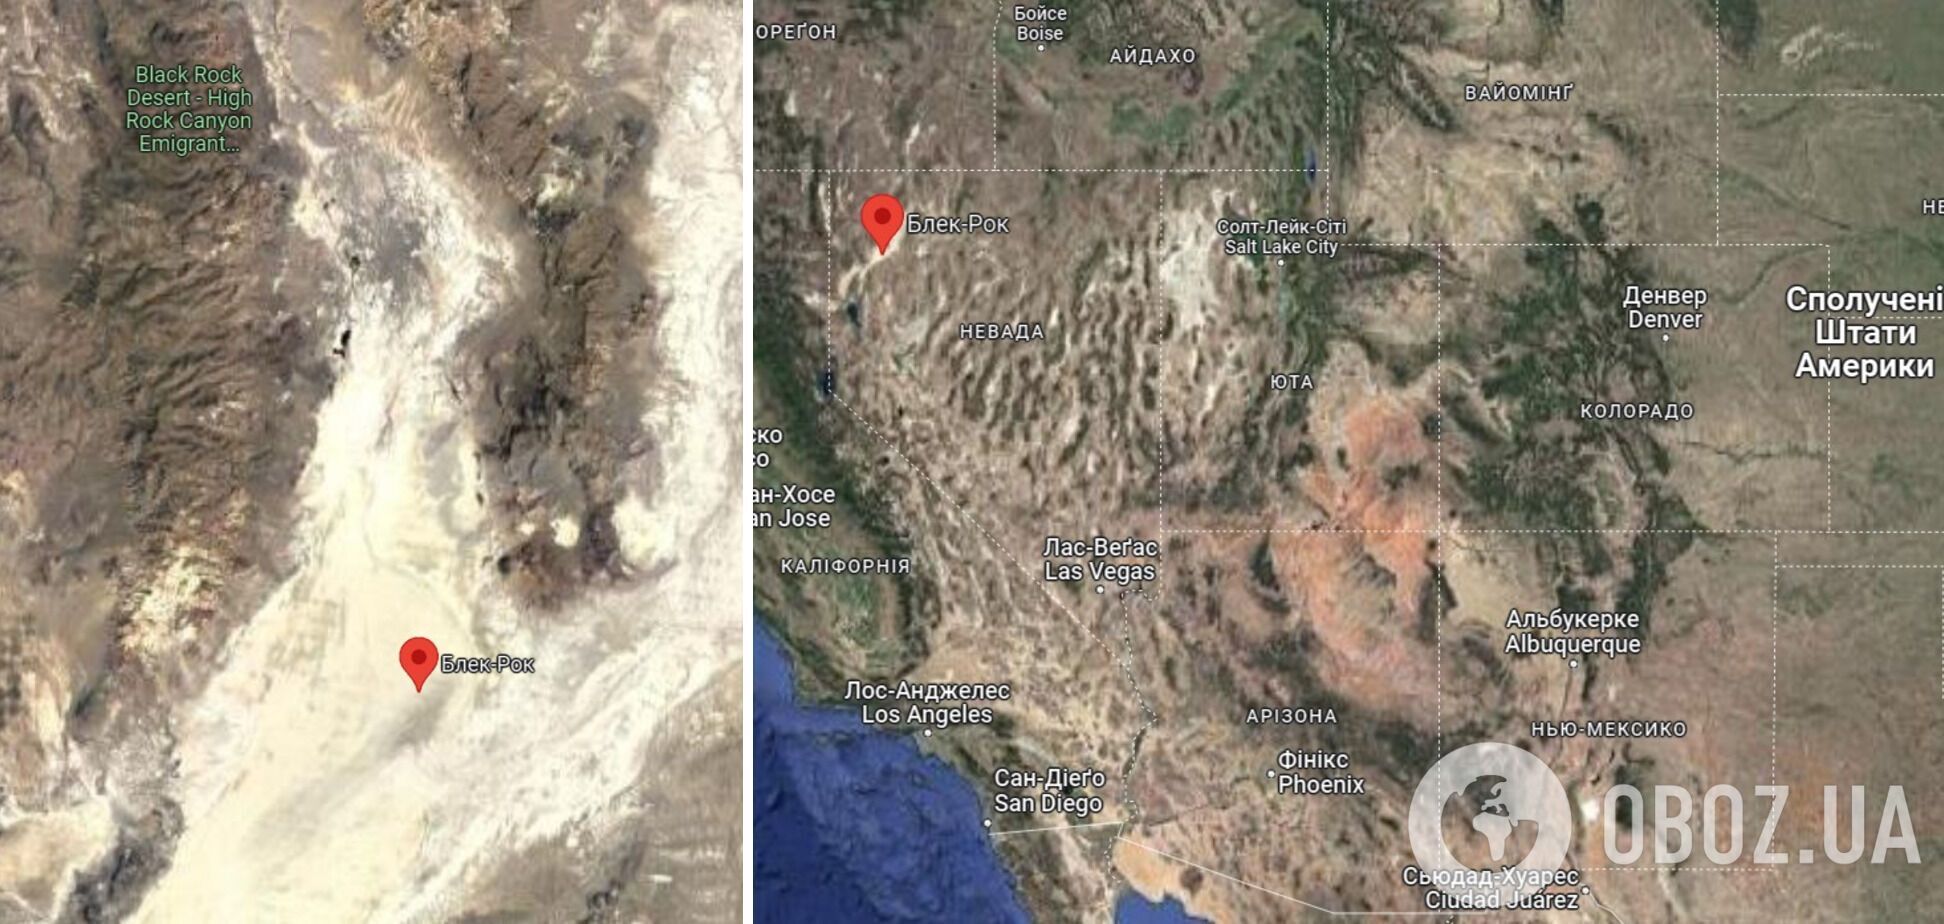 В США десятки тысяч участников Burning Man застряли в пустыне из-за ливней, есть погибший: людей призвали экономить воду и еду. Фото